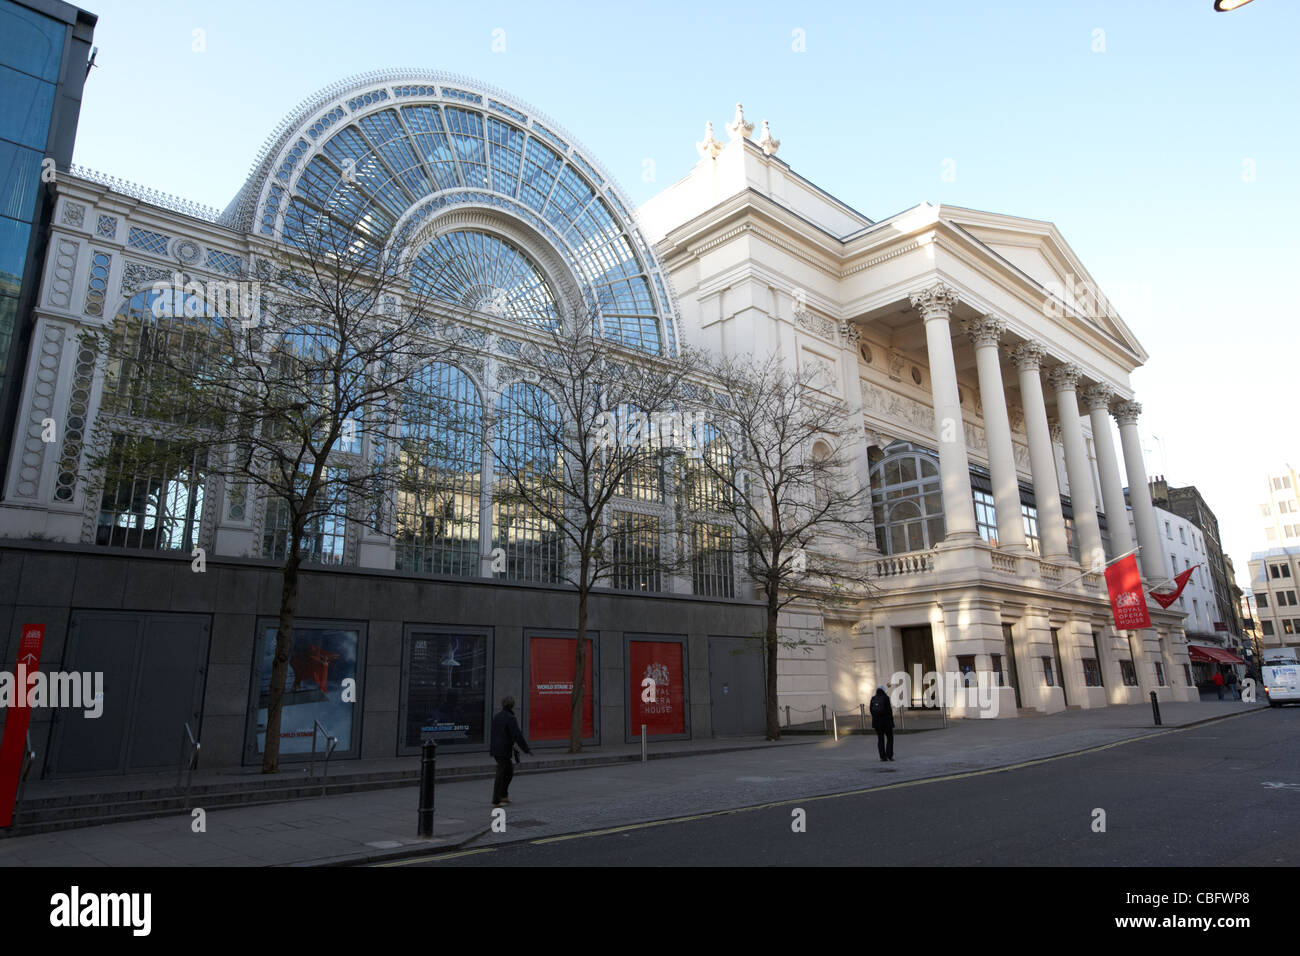 the royal opera house theatreland west end london england uk united kingdom Stock Photo